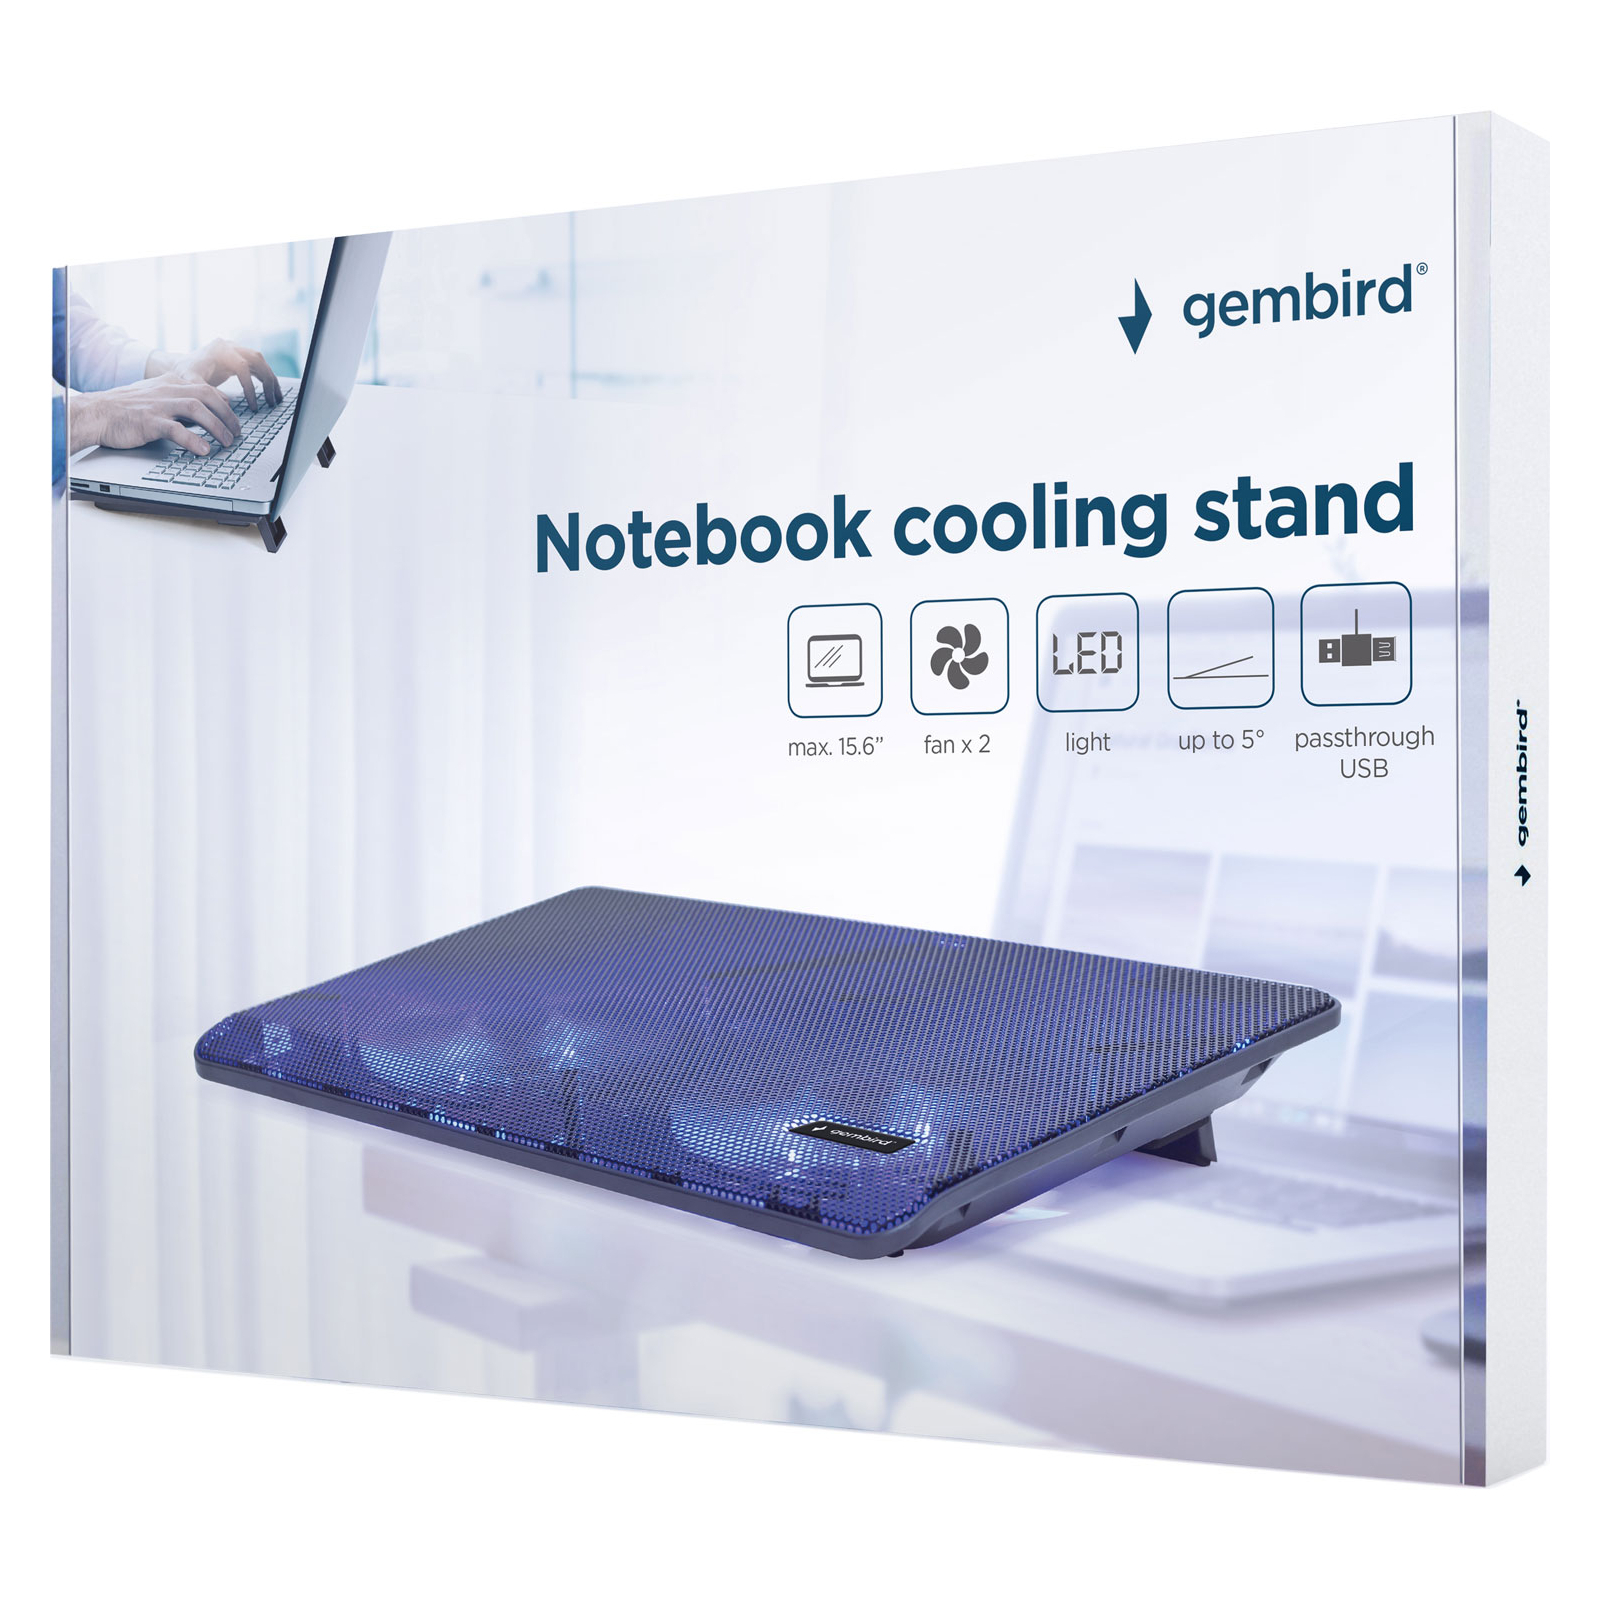 Подставка для ноутбука Gembird до 15.6", 2x125мм вентиляторы, черный (NBS-2F15-05) изображение 6